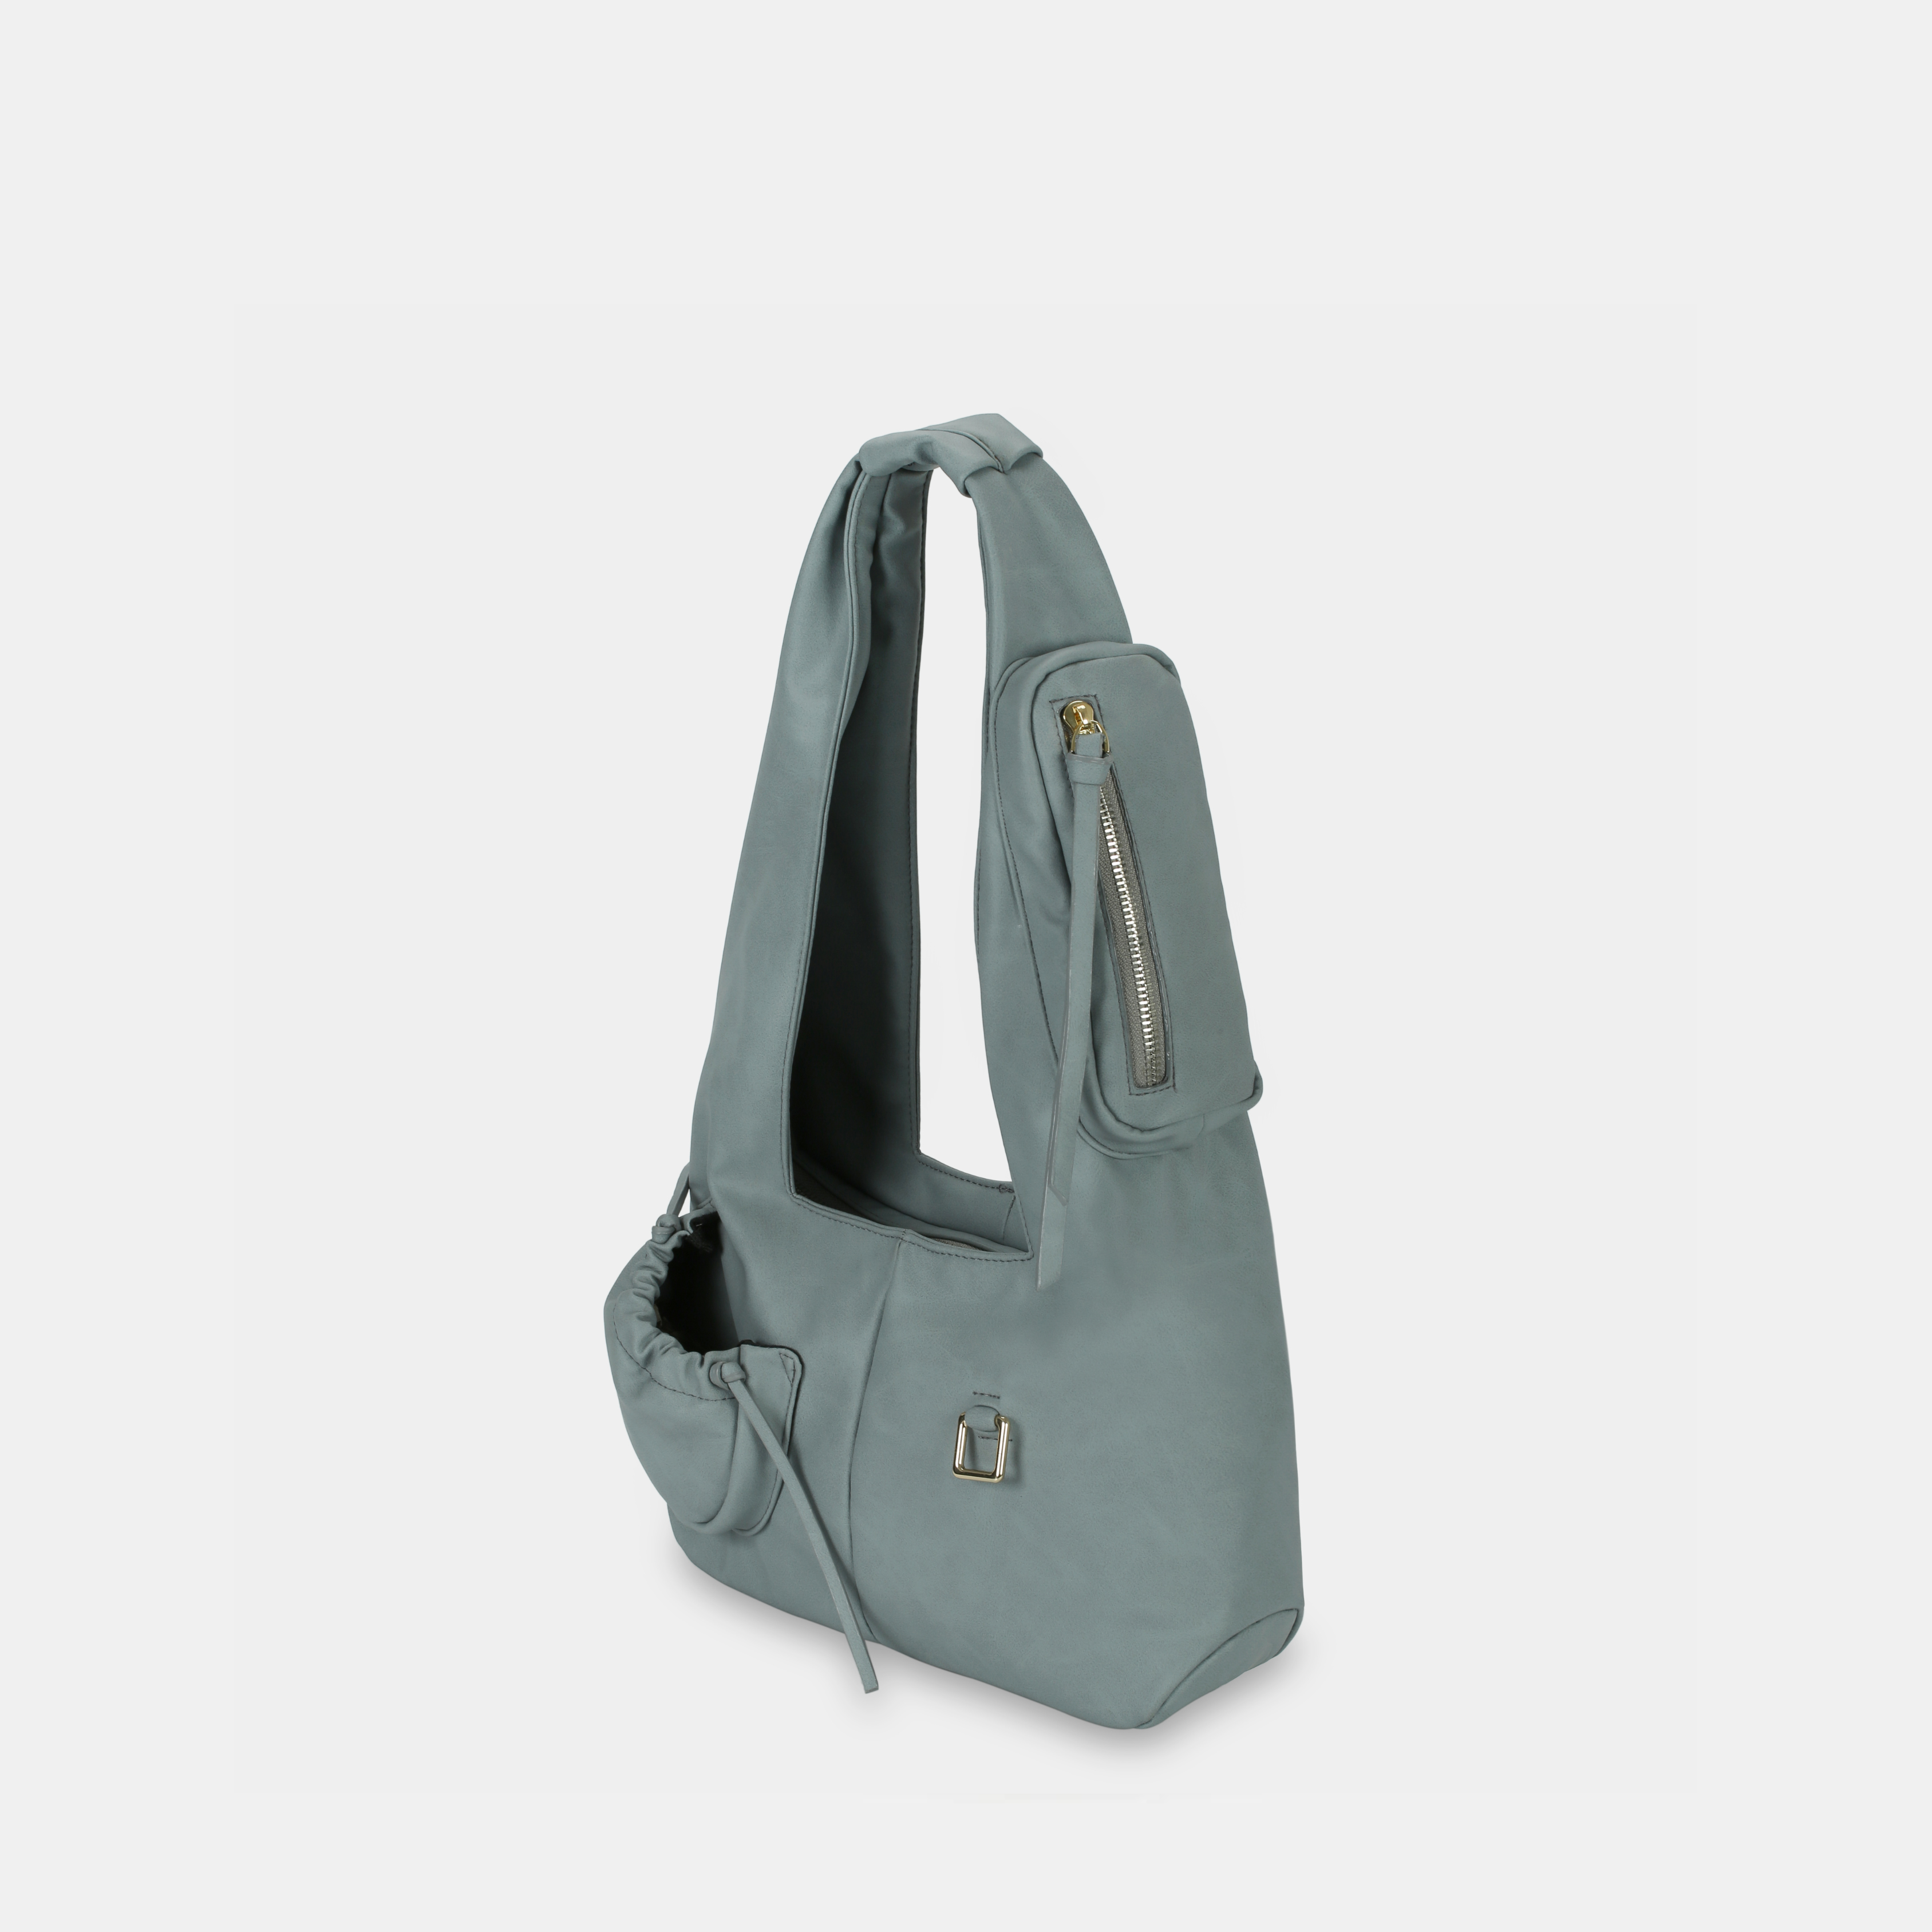 Túi xách Hobo C2-Pocket size Medium (M) màu Xanh xi-măng